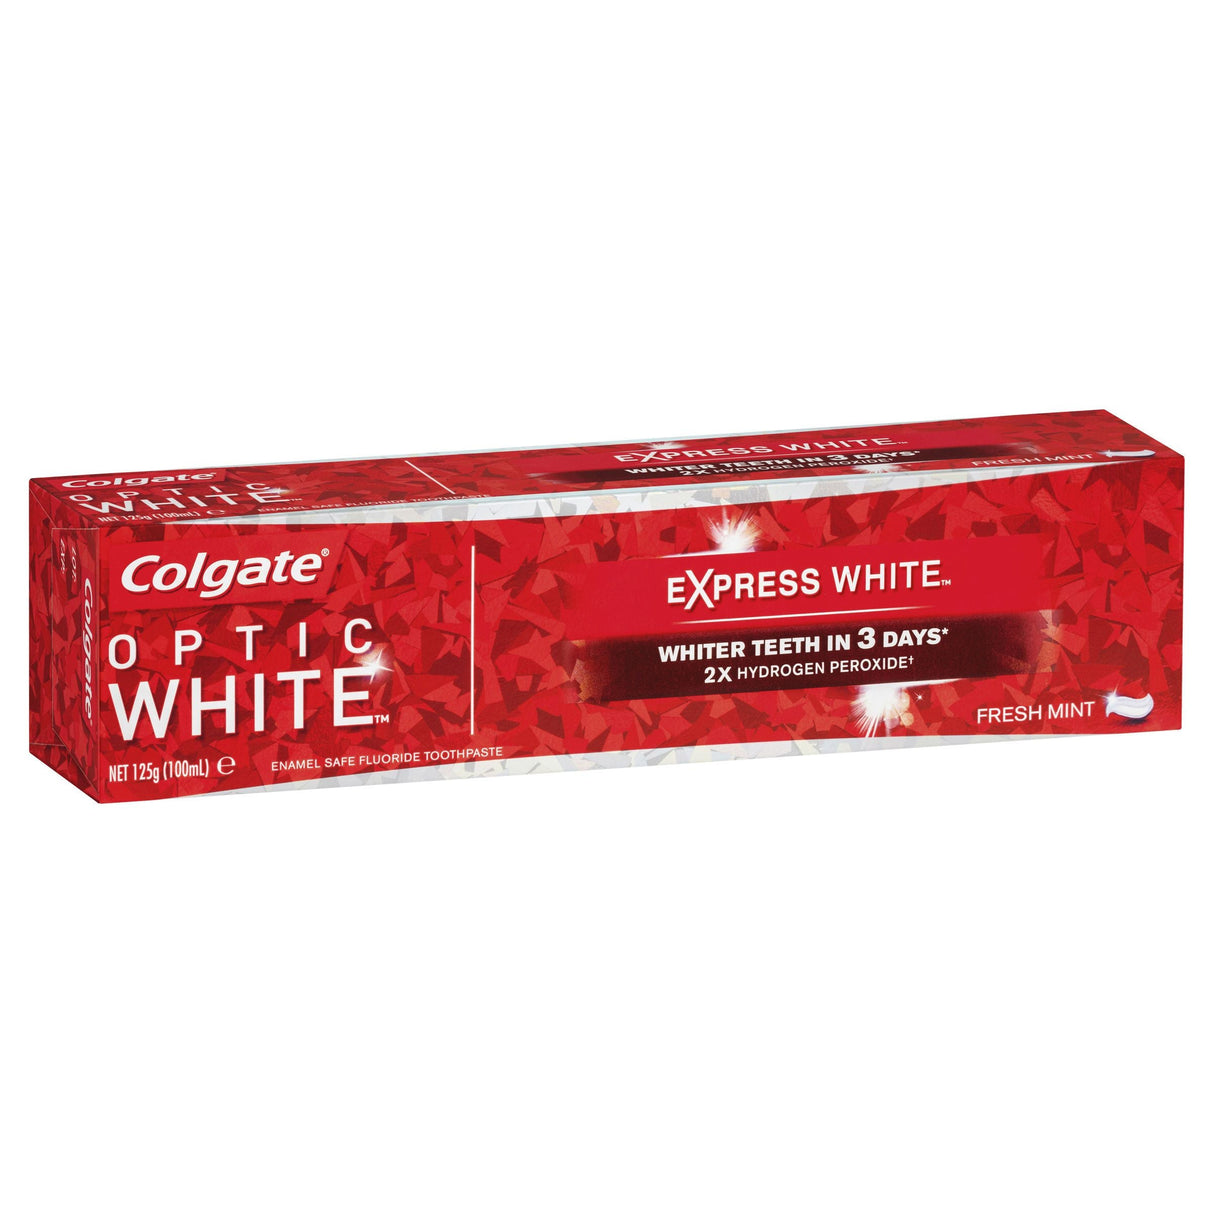 Colgate Optic White Express White Whitening Toothpaste Fresh Mint 125g